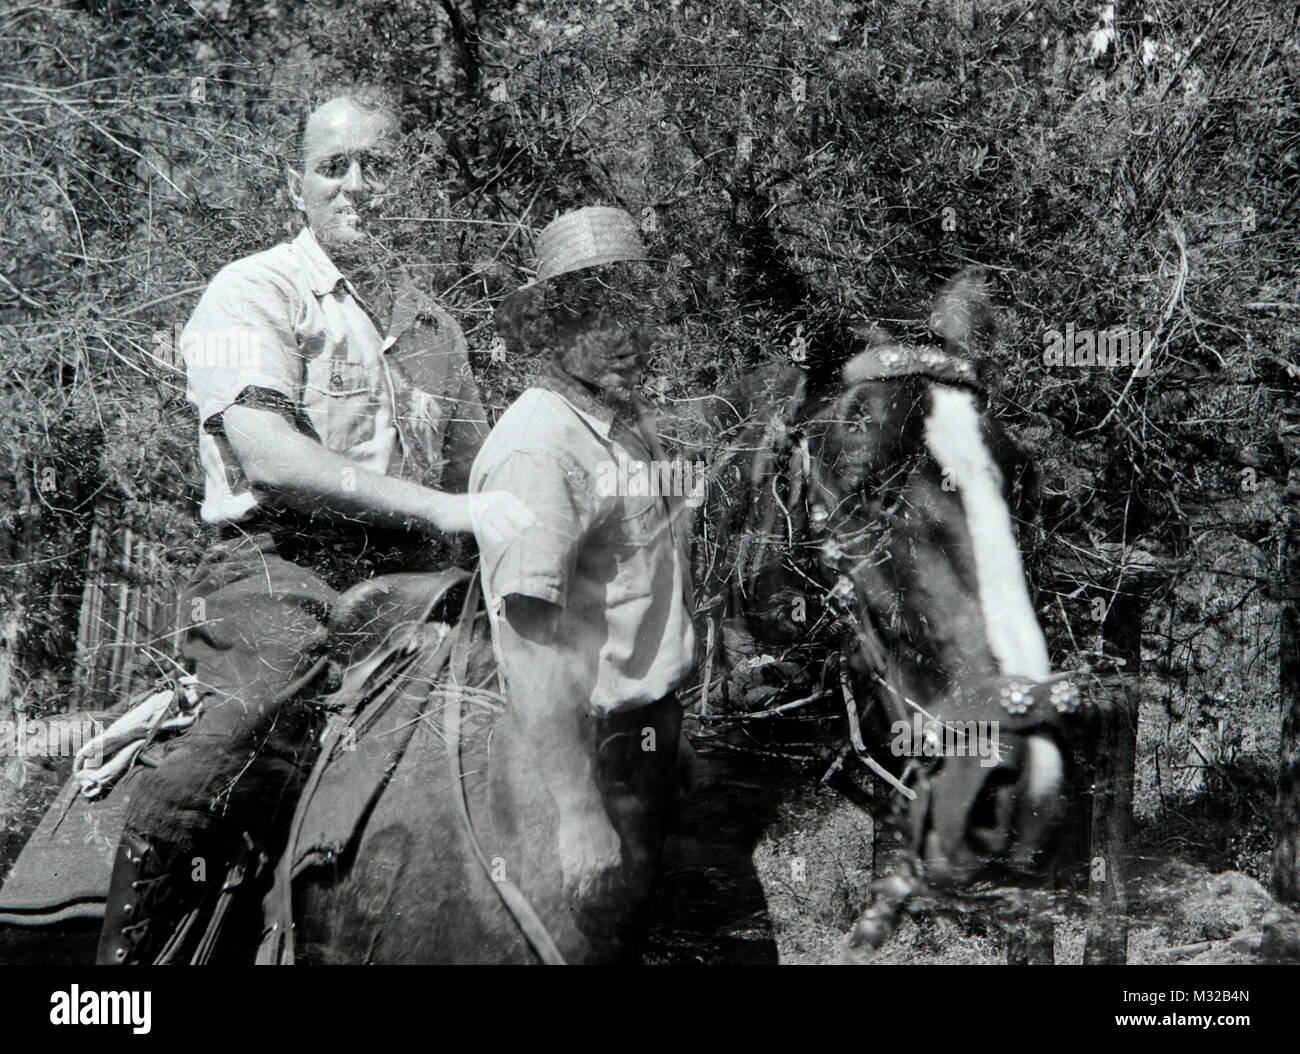 Doble exposición accidental de un hombre y un caballo, ca. 1950. Foto de stock